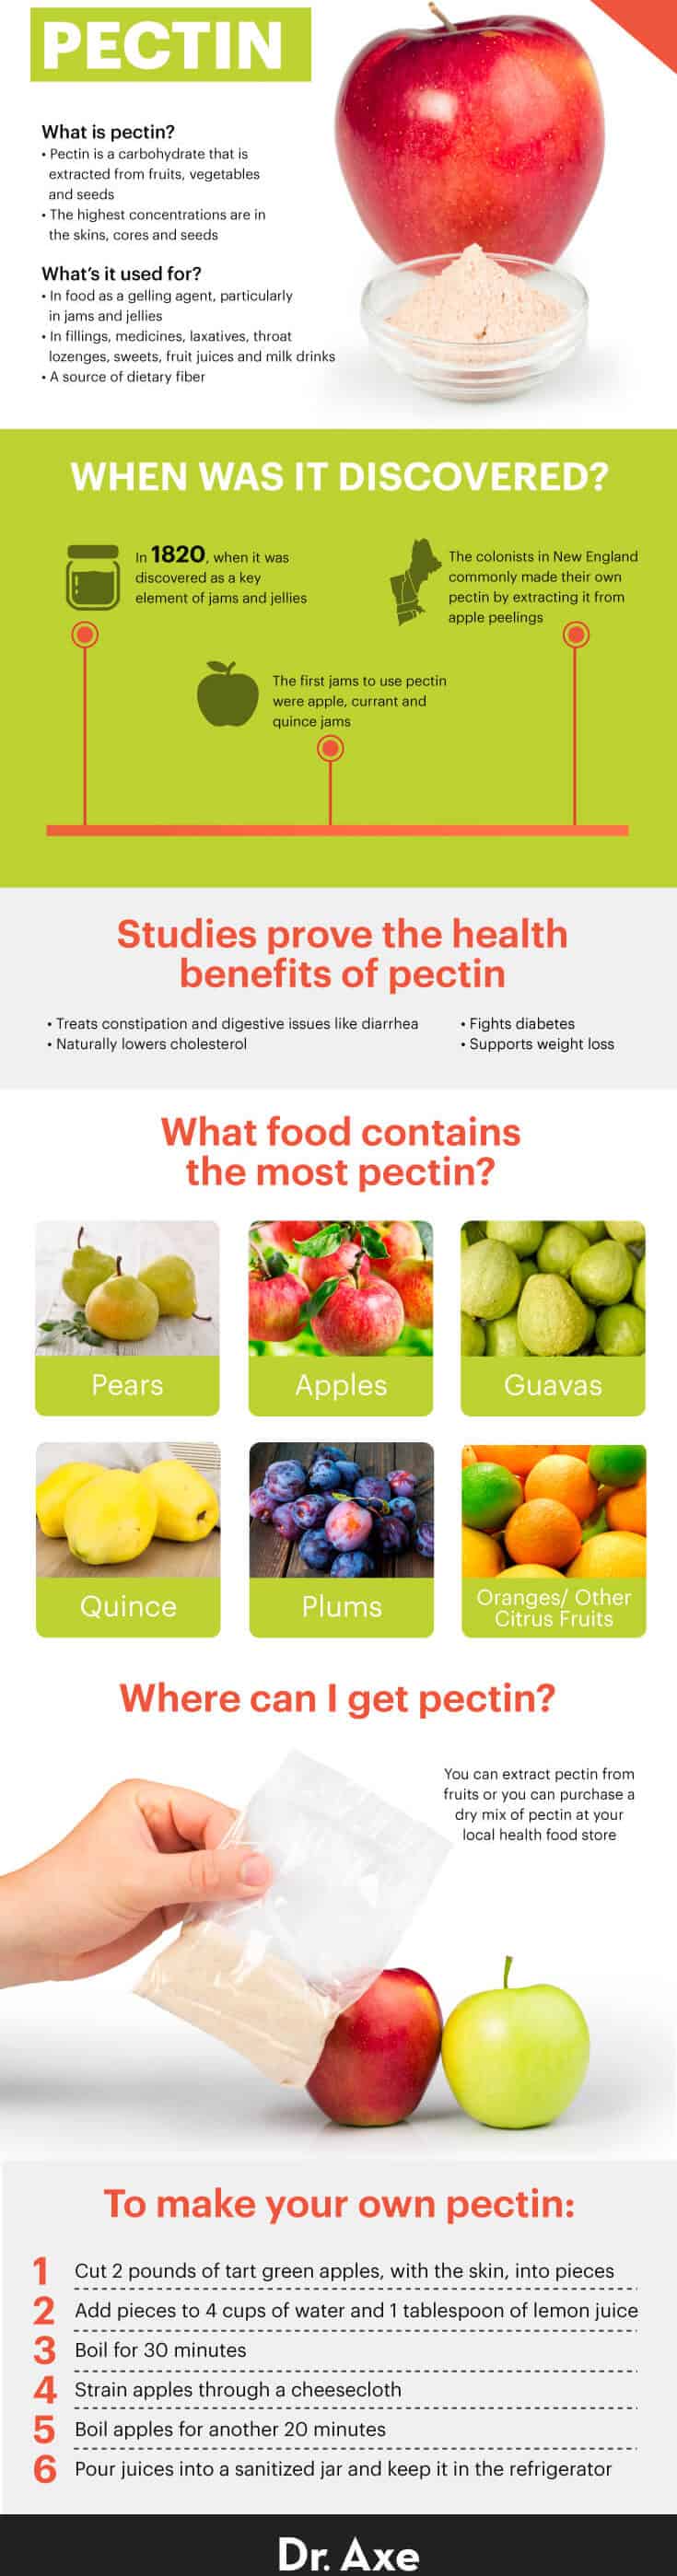 Guide to pectin - Dr. Axe